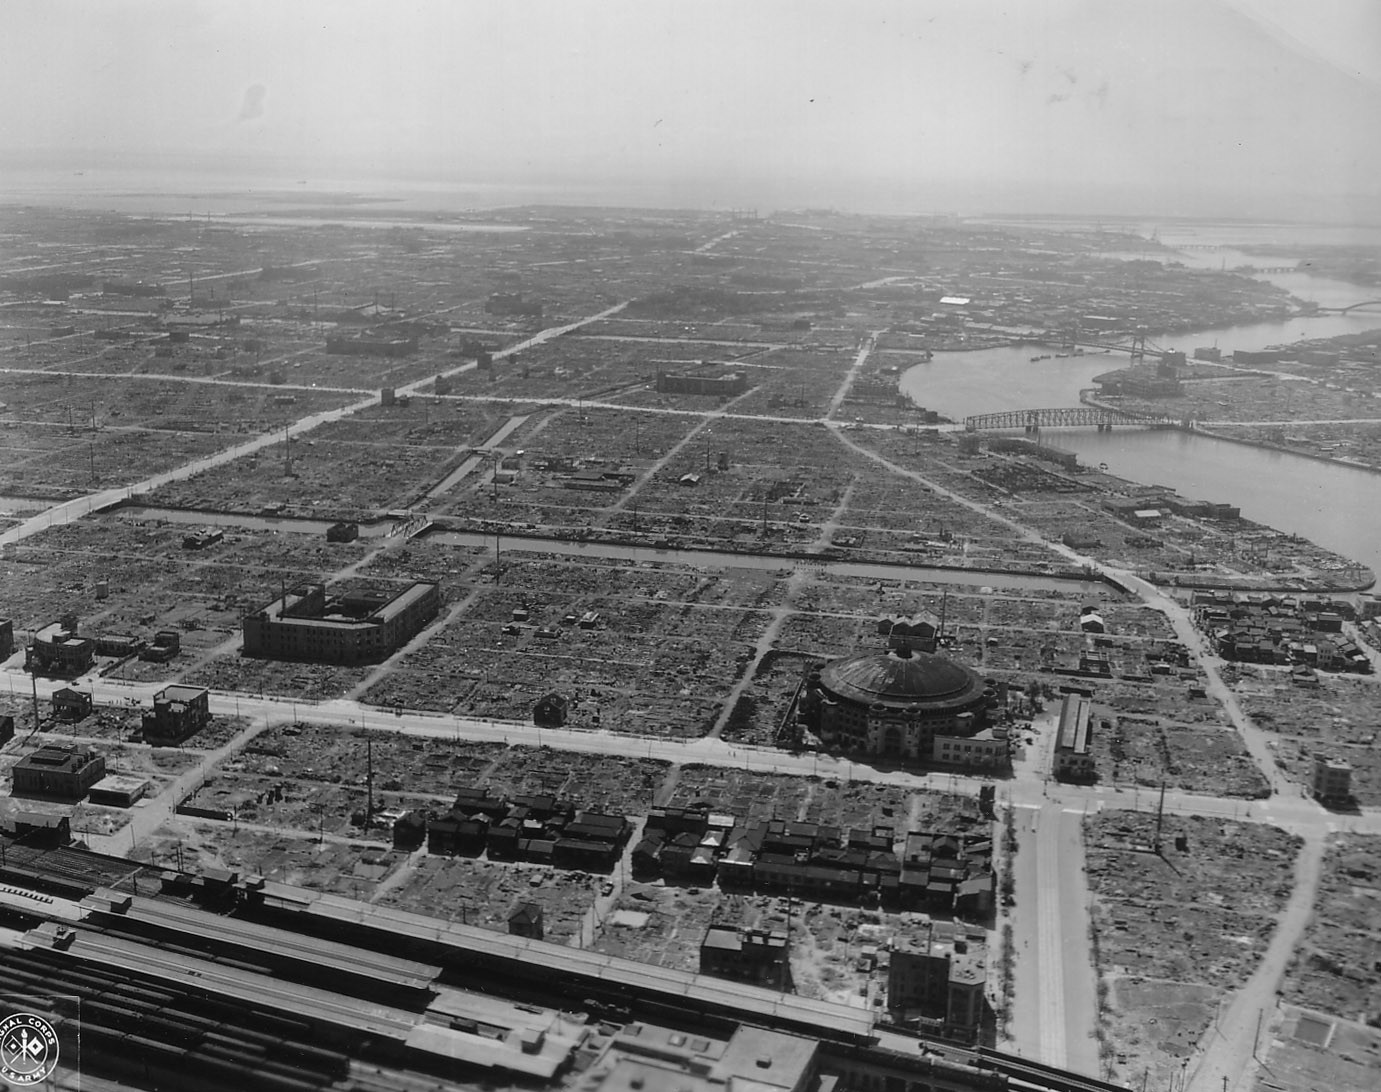 Tokyo, Japan in ruins, 28 Sep 1945